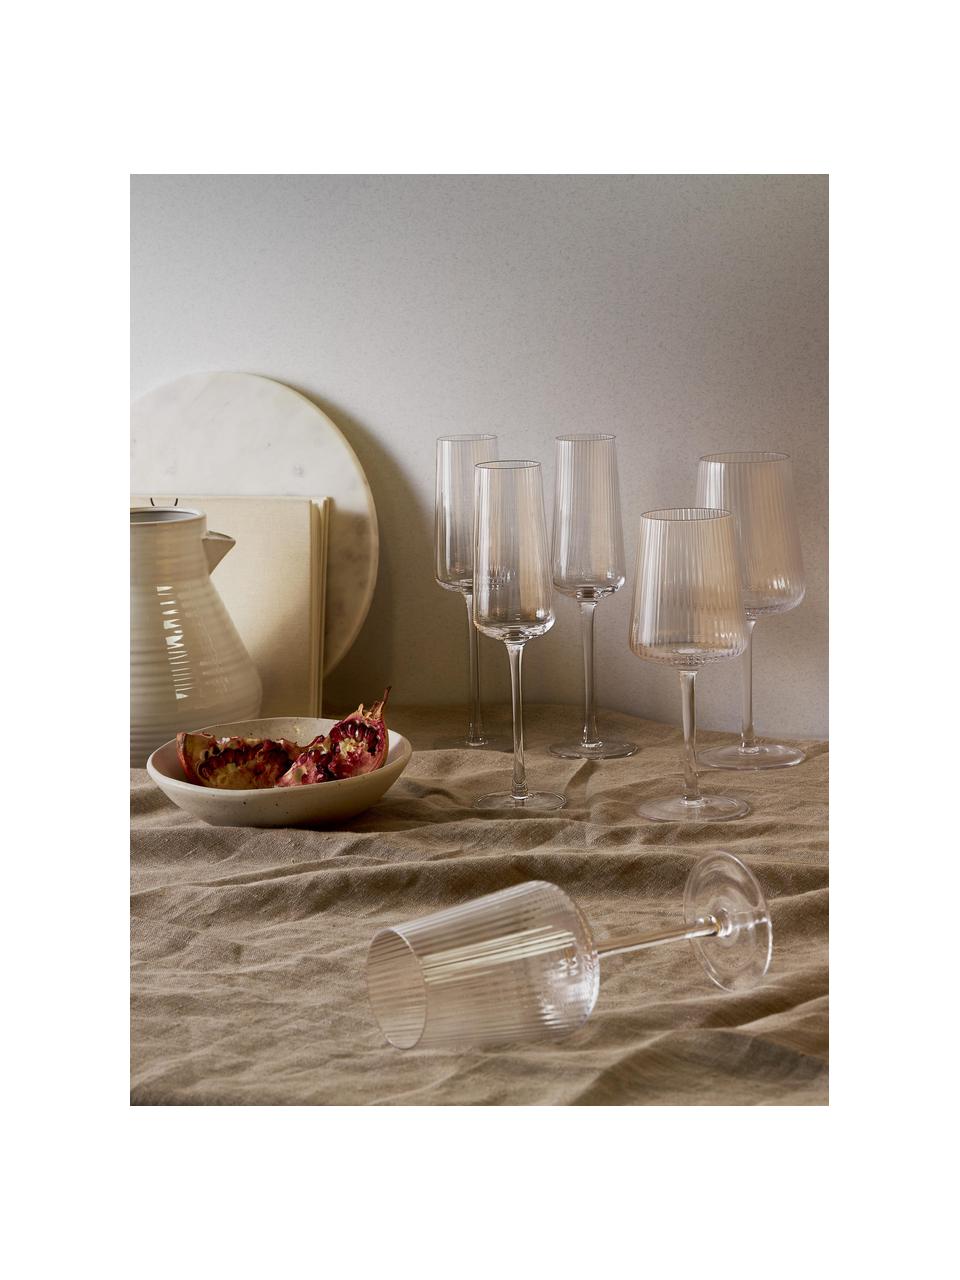 Handgefertigte Weissweingläser Cami mit Rillenstruktur, 4 Stück, Glas, mundgeblasen, Transparent, Ø 8 x H 22 cm, 390 ml